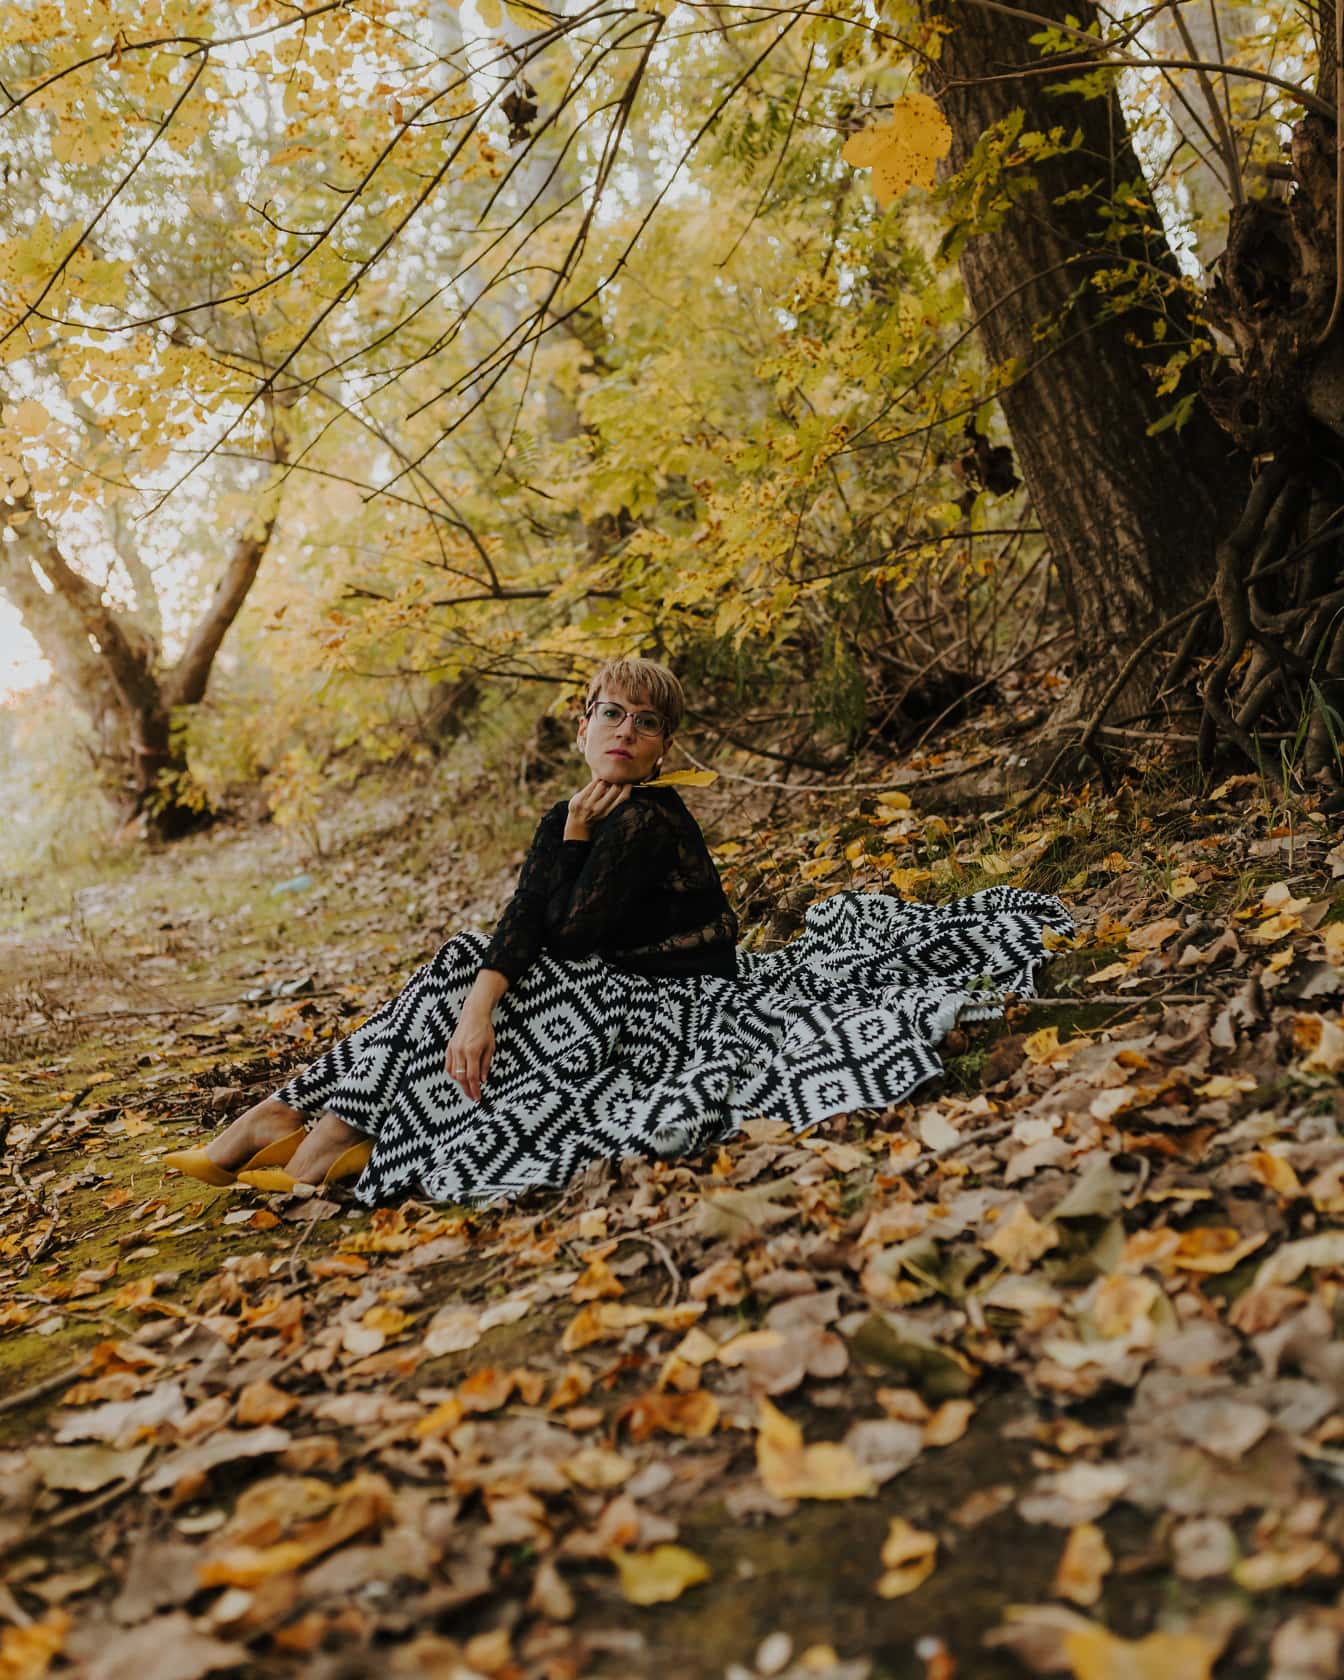 Divatos fekete-fehér ruha fiatal nőn az őszi erdőben